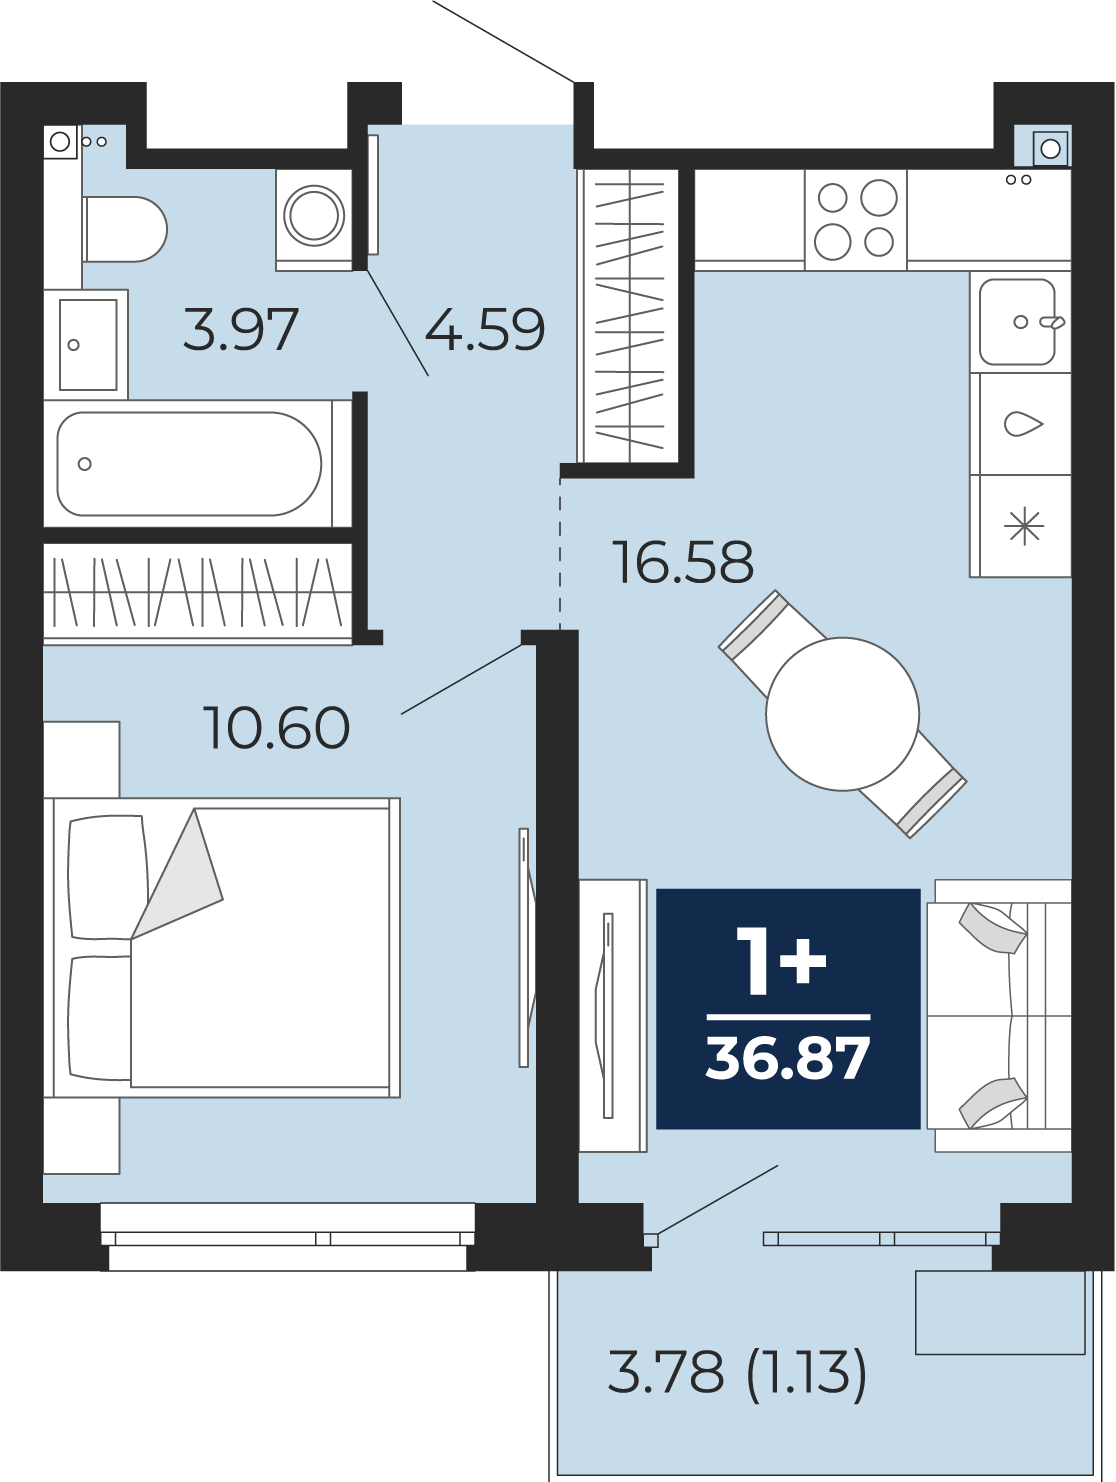 Квартира № 126, 1-комнатная, 36.87 кв. м, 2 этаж